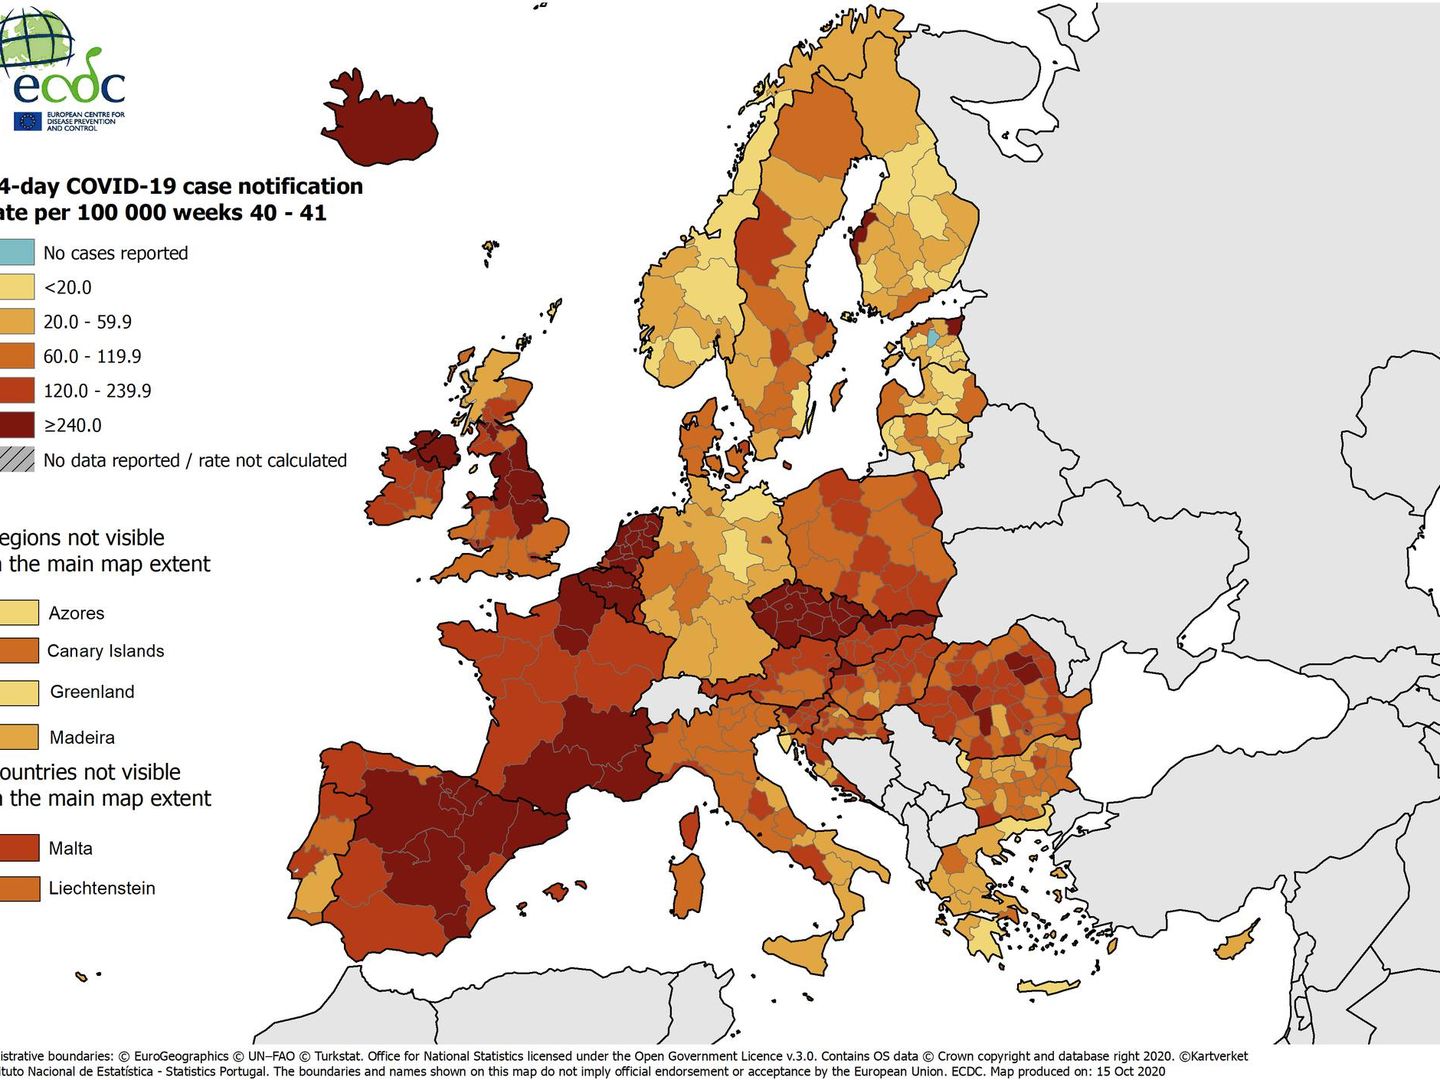 Mapa de incidencia de nuevos contagios por regiones en Europa (ECDC)